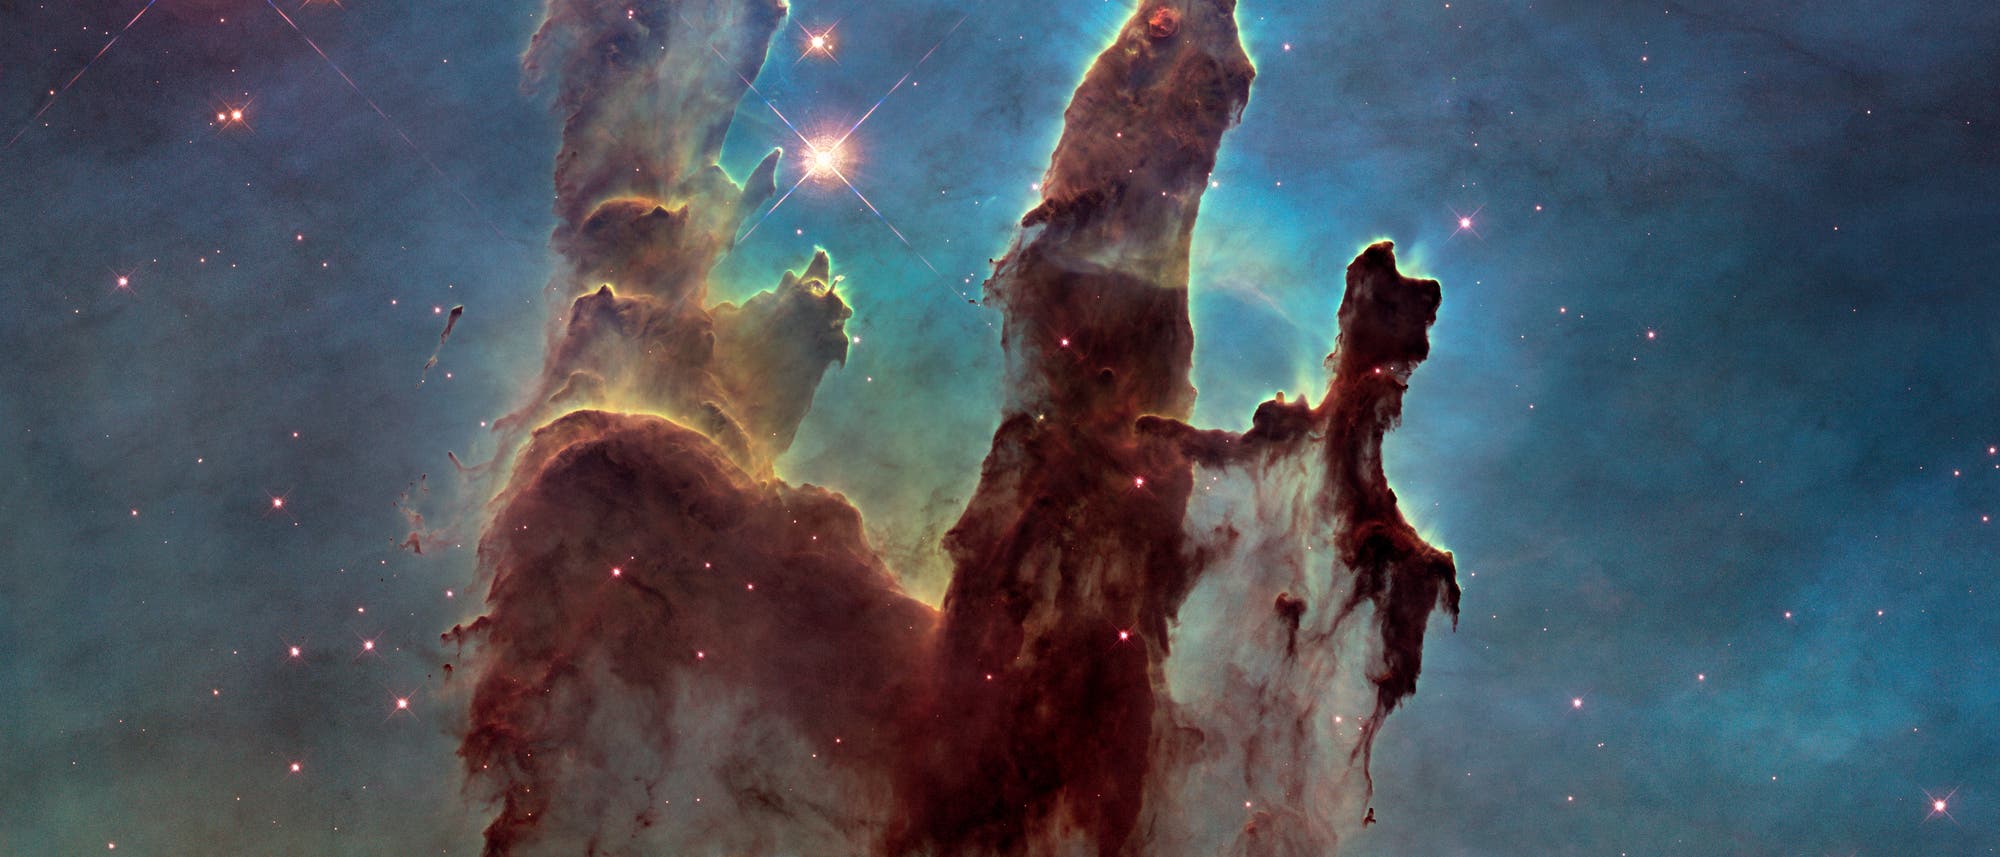 Die "Säulen der Schöpfung" im Adlernebel (Aufnahme des Weltraumteleskops Hubble)